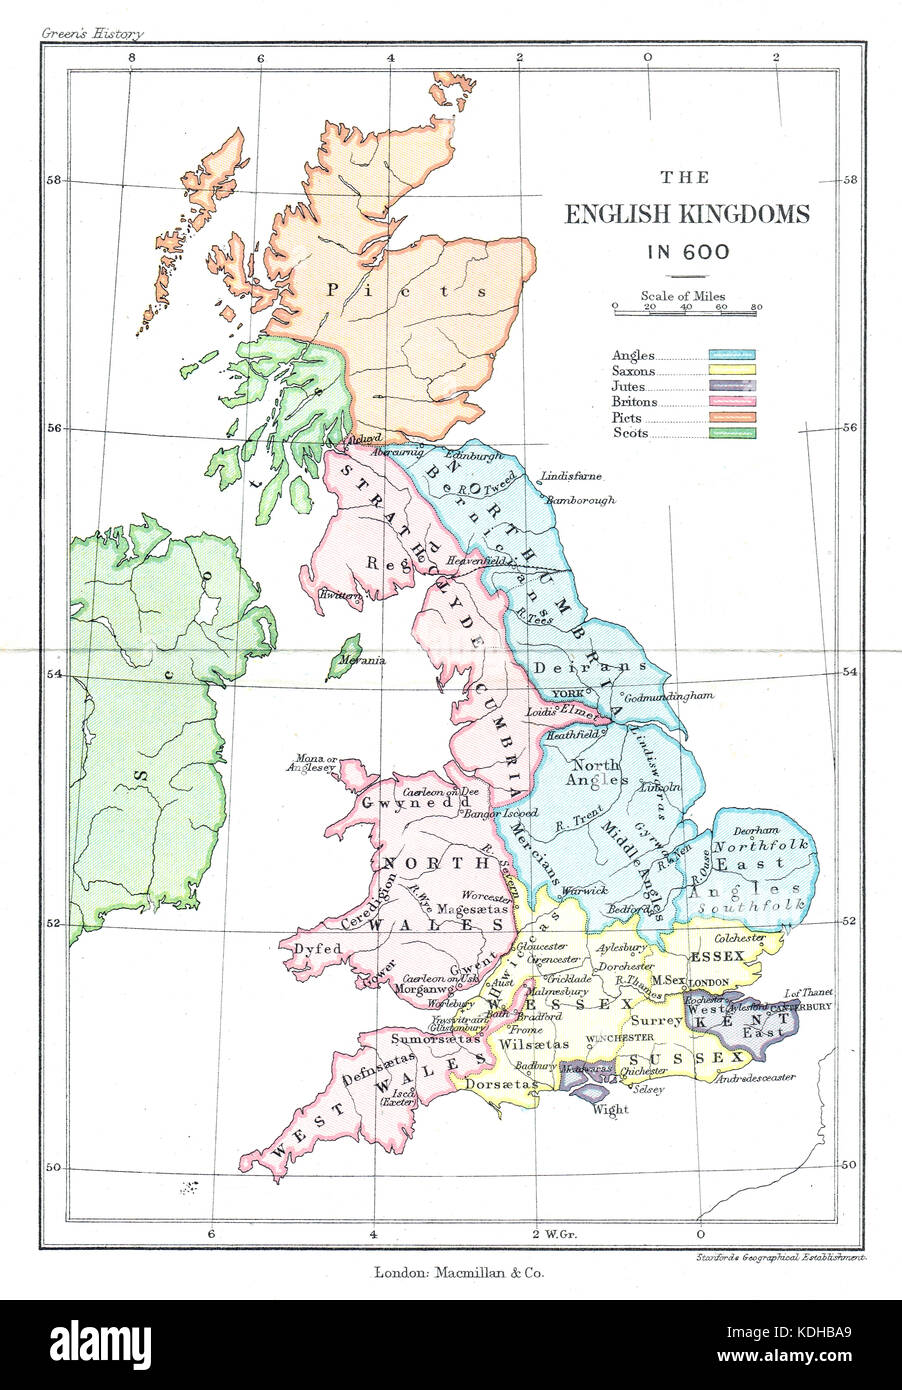 Carte de l'anglais en royaumes ad 600 Banque D'Images